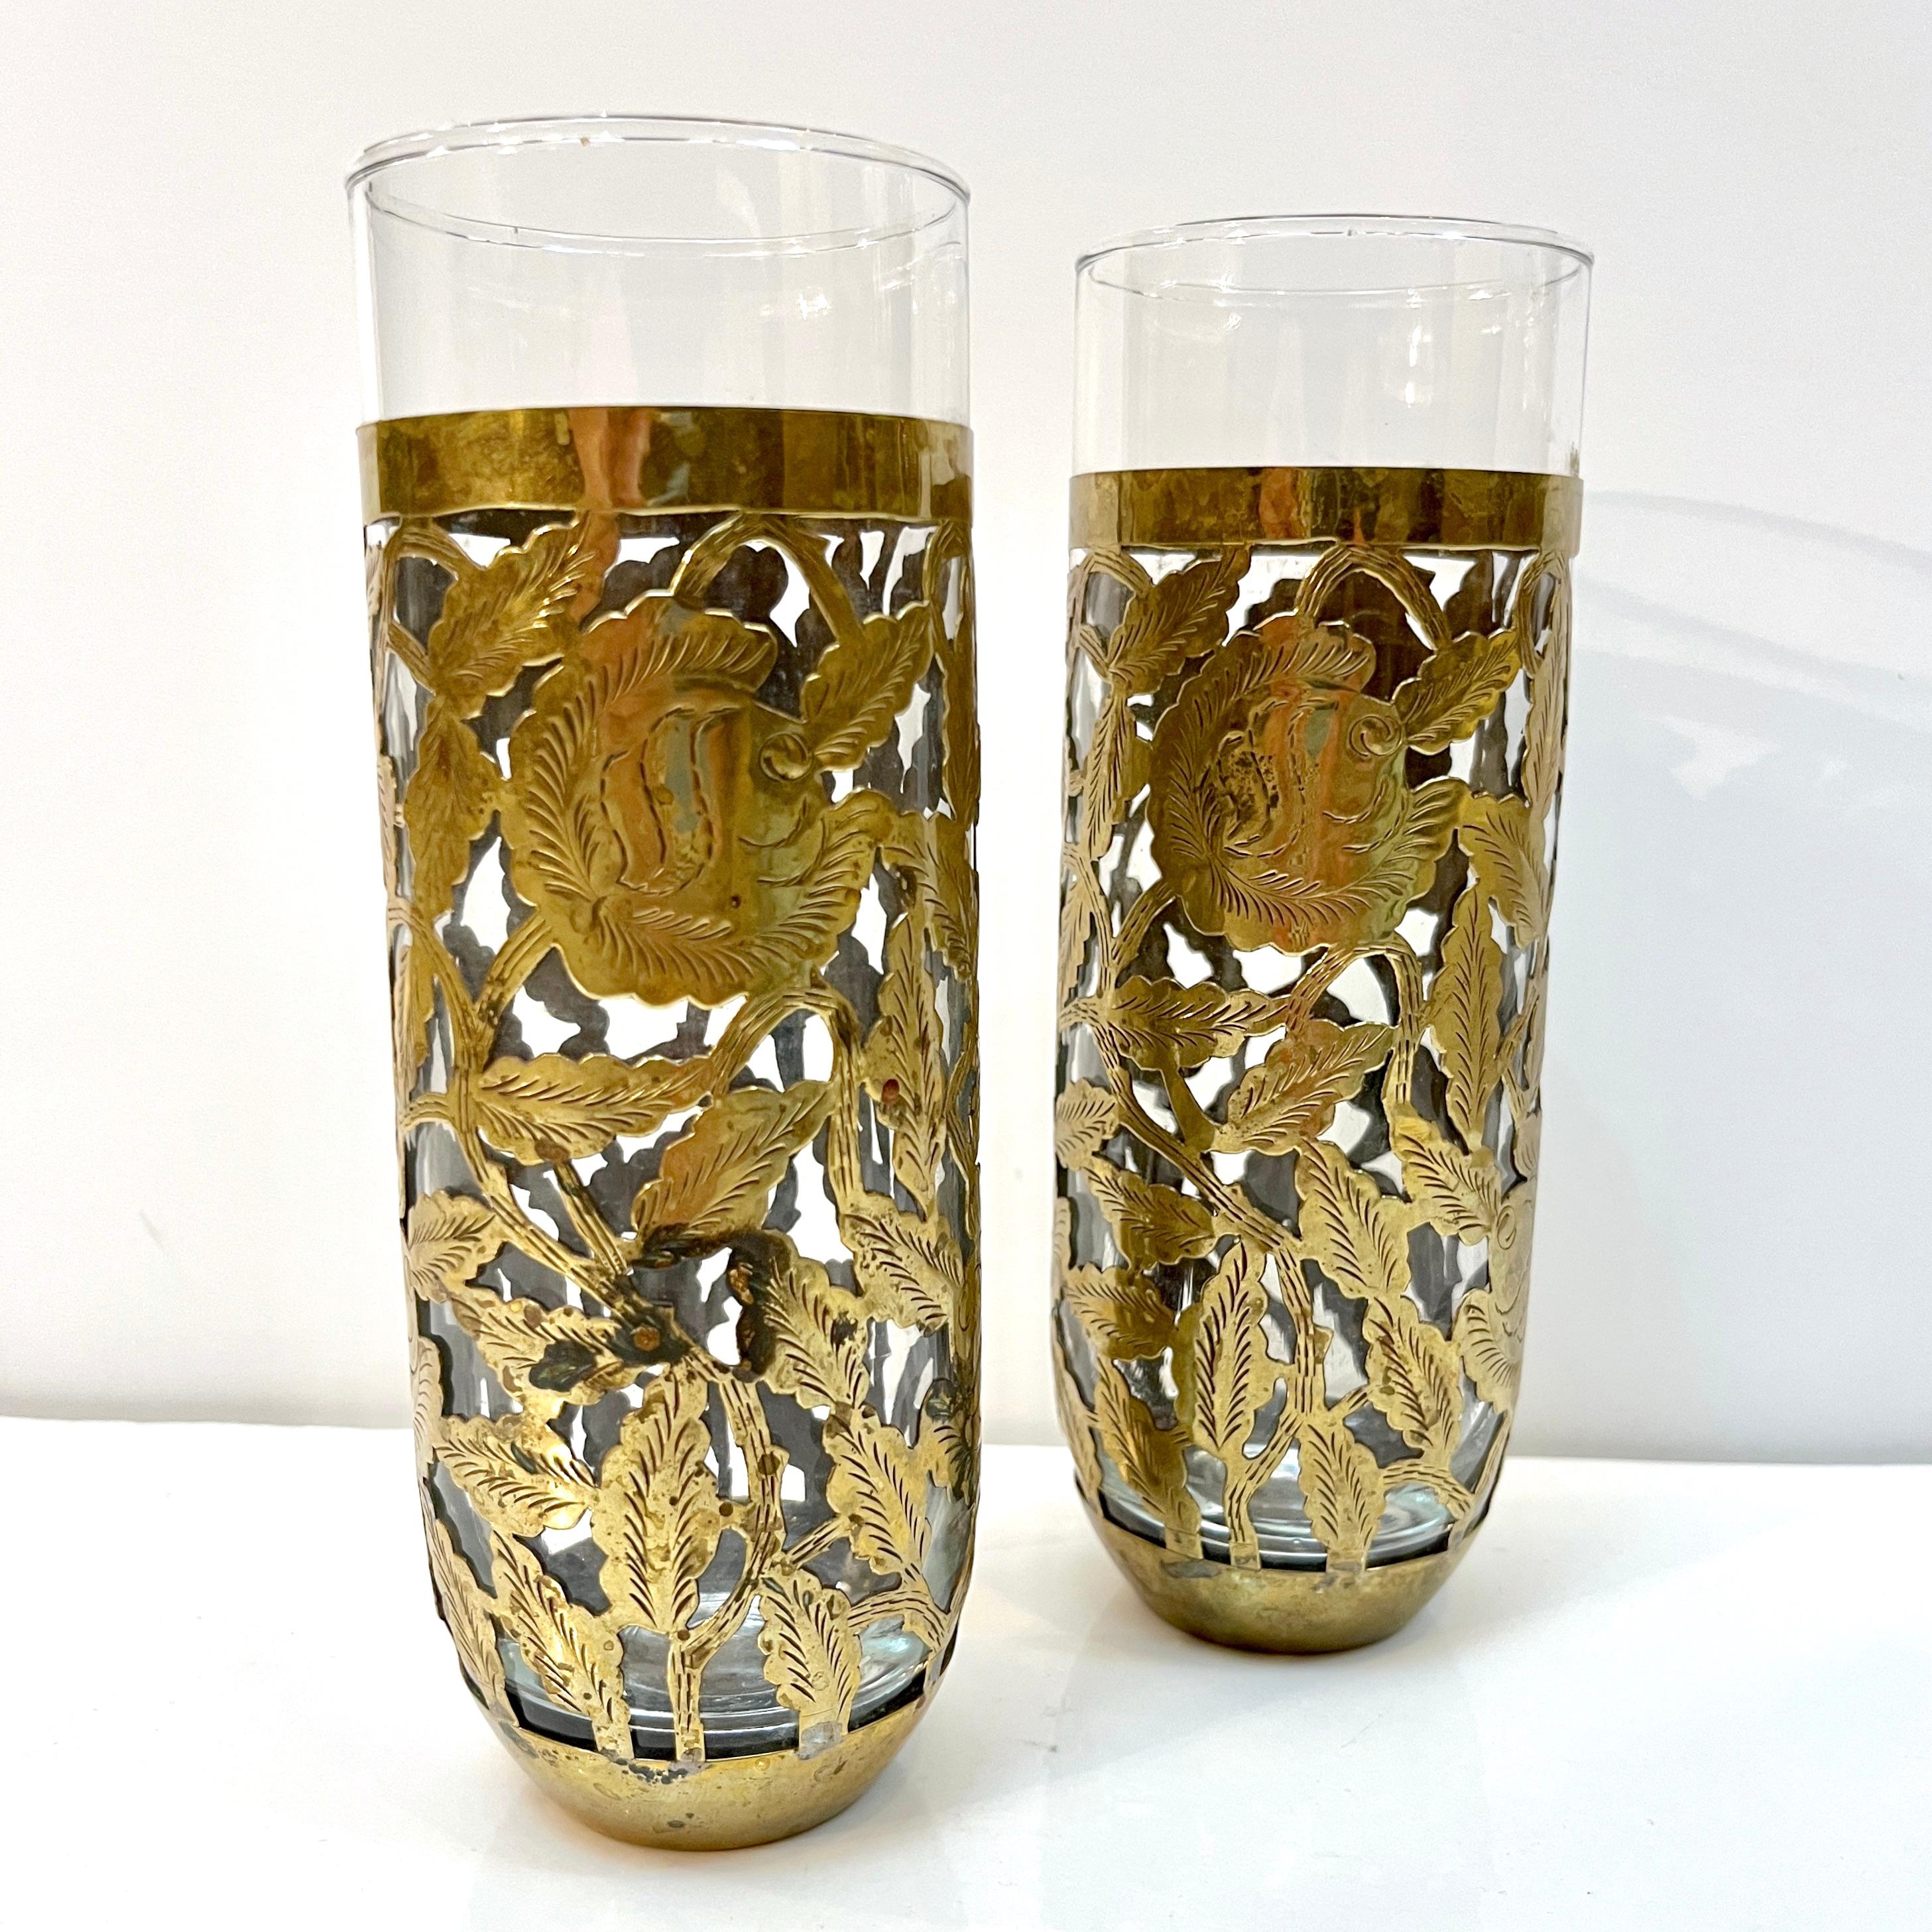 Paire de lunettes organiques des années 1960, entièrement fabriquées à la main au Mexique, recouvertes d'un étui ouvert en laiton antique fait à la main et orné d'un décor floral et feuillu gravé.
Idéal pour le bar, mais aussi comme vase individuel